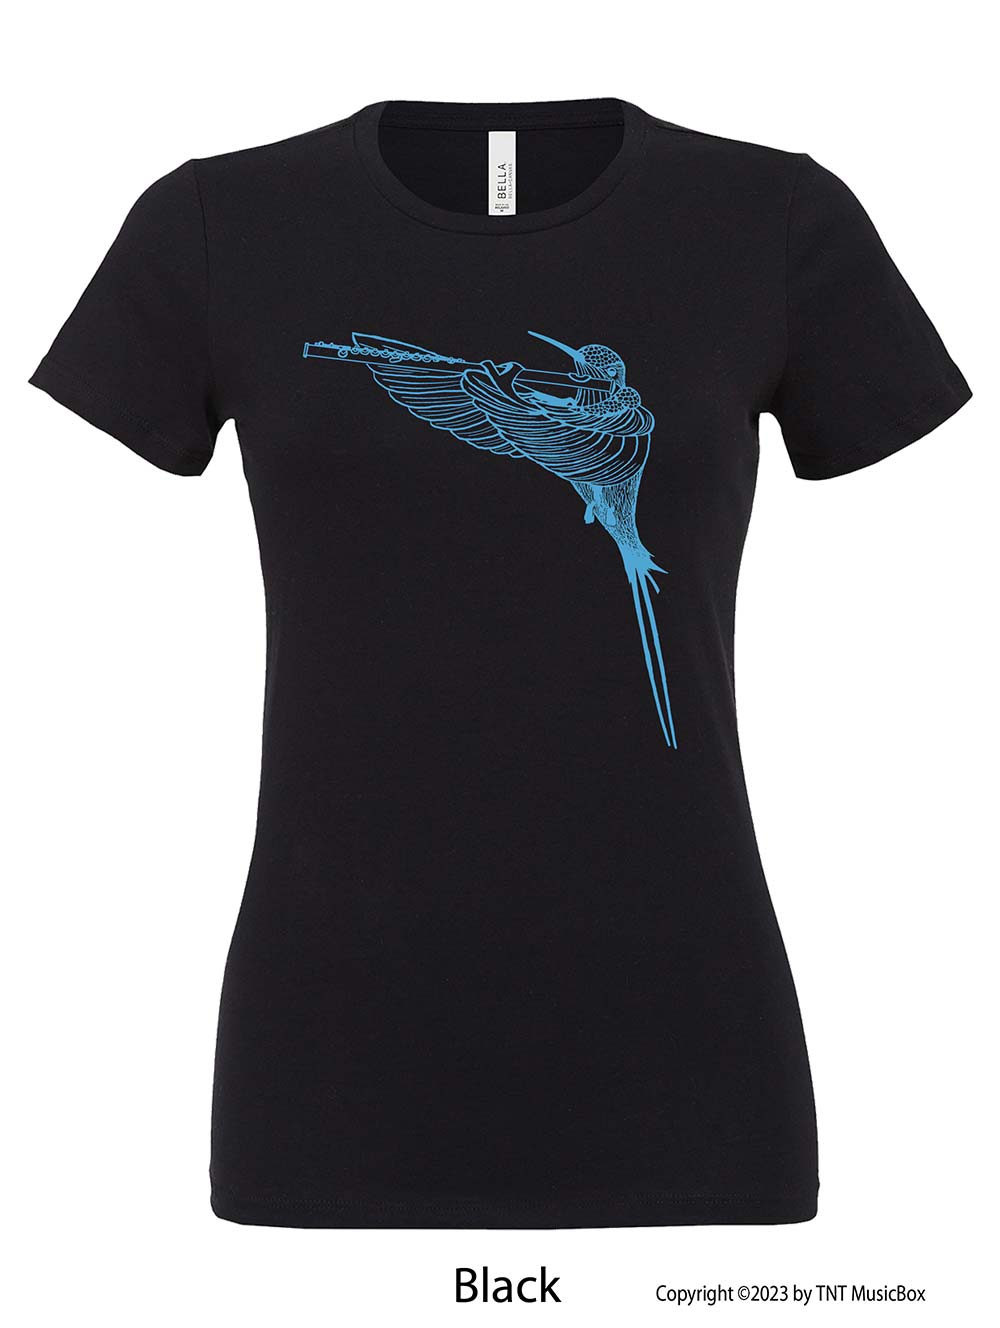 Hummingbird Playing Flute on a Black T-Shirt.